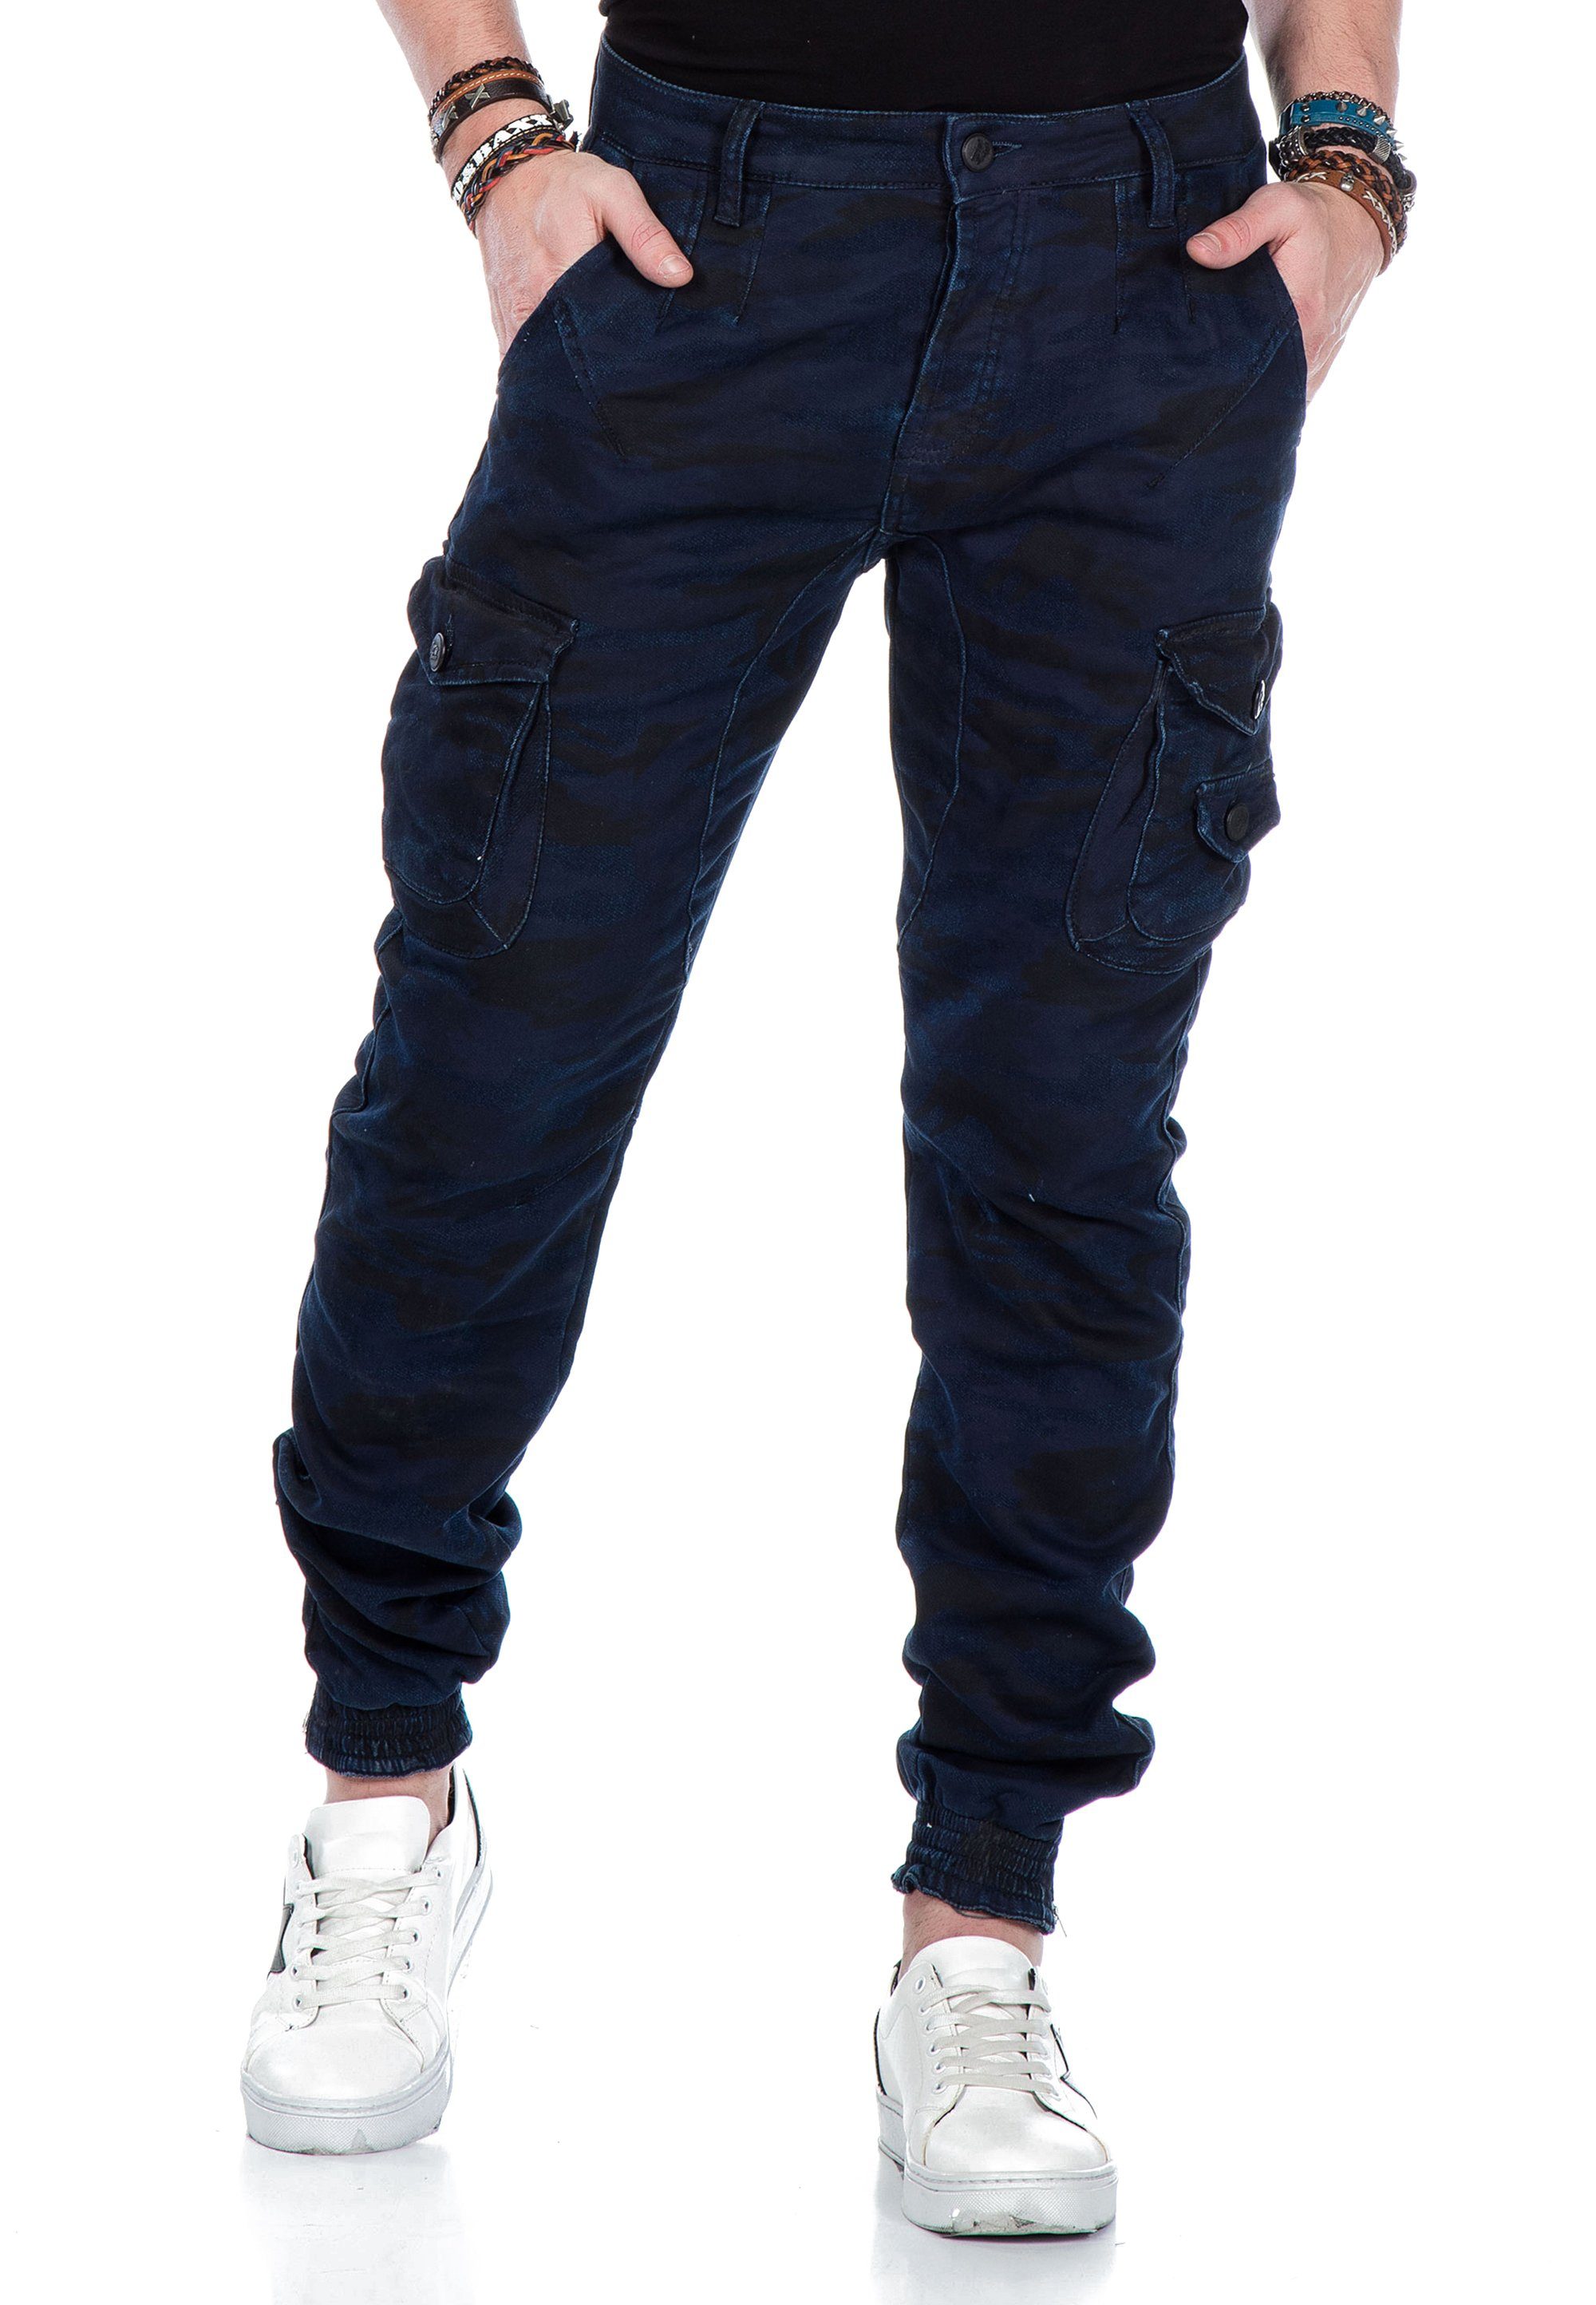 mit Cipo & Baxx elastischem Bequeme blau-mehrfarbig Jeans Saum